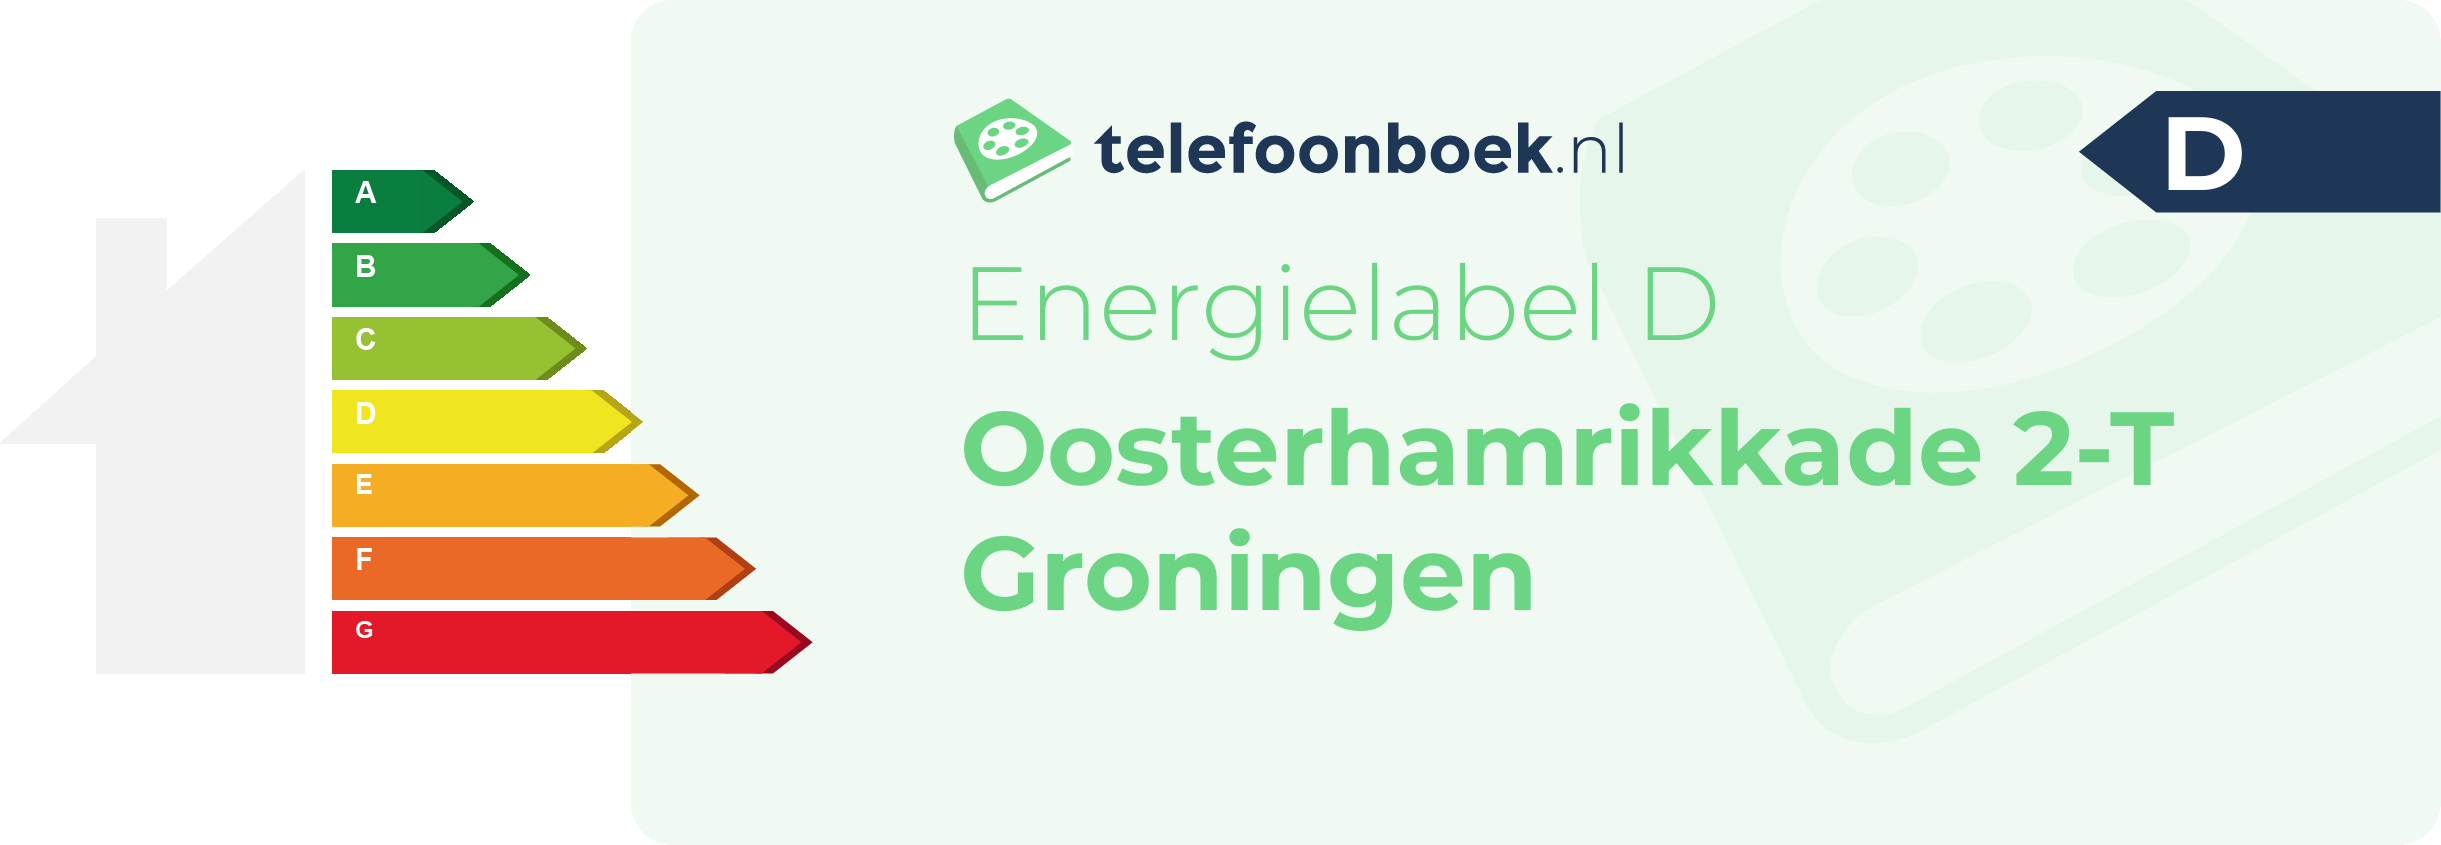 Energielabel Oosterhamrikkade 2-T Groningen